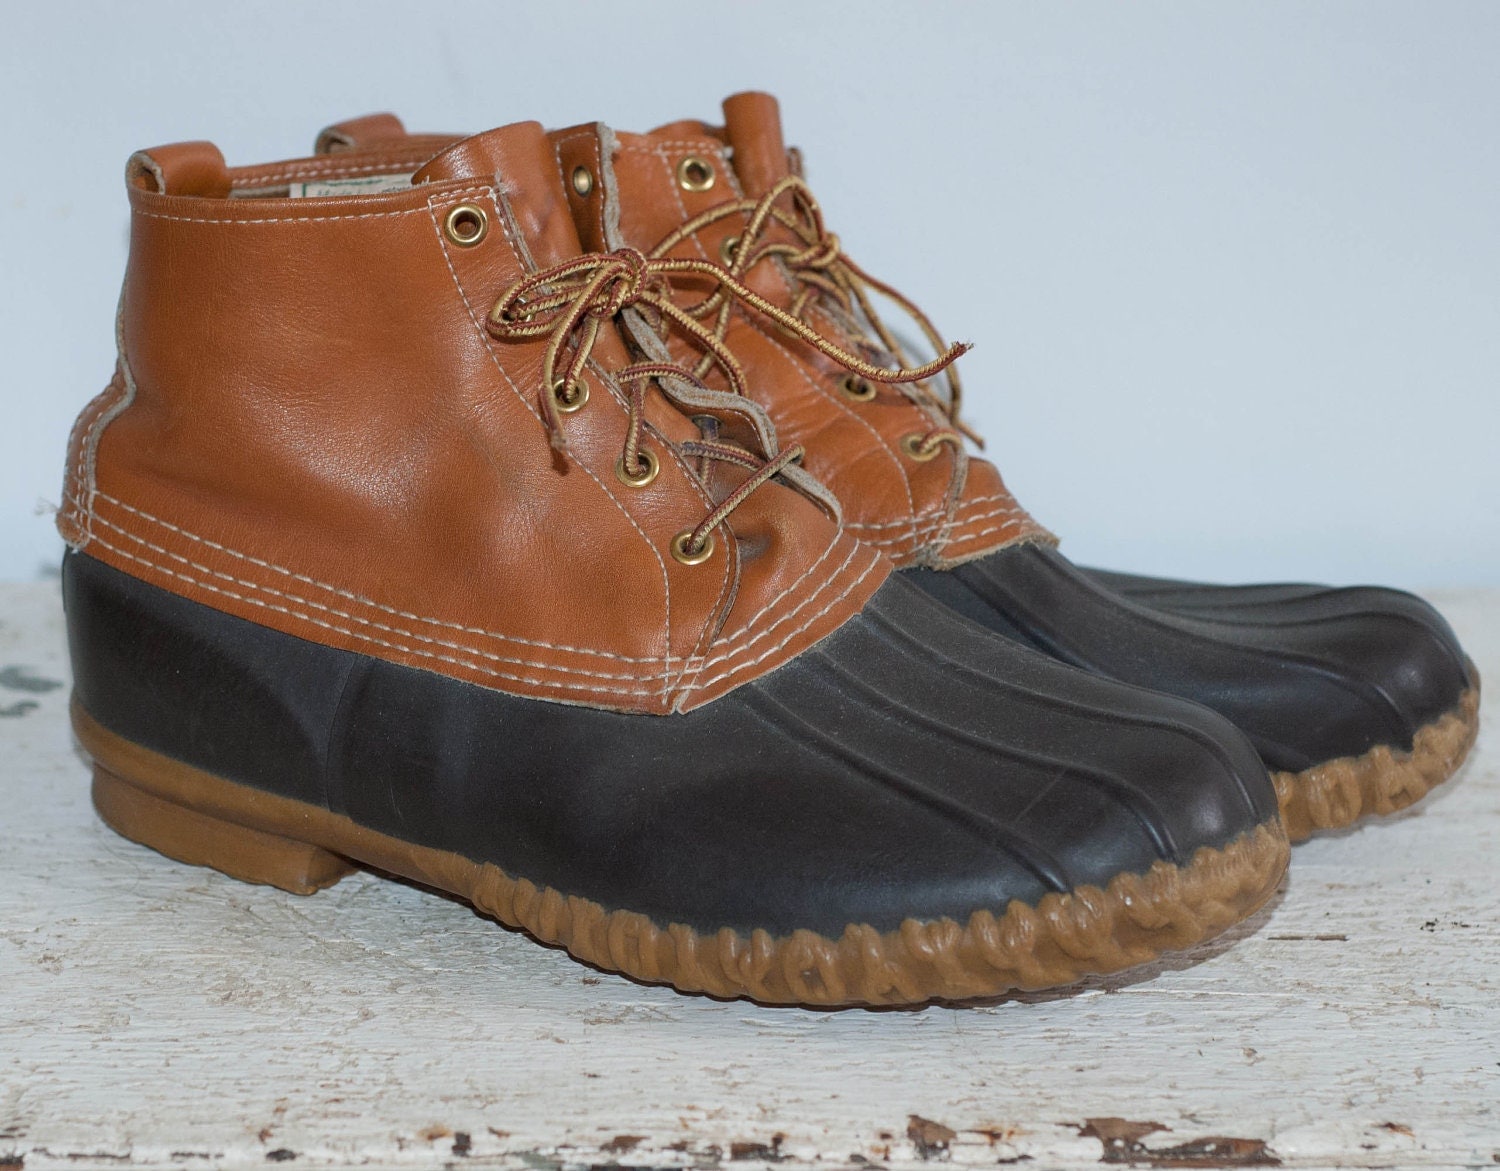 L.L. Bean Duck Boots Men's size 10 by vieuxManteau on Etsy